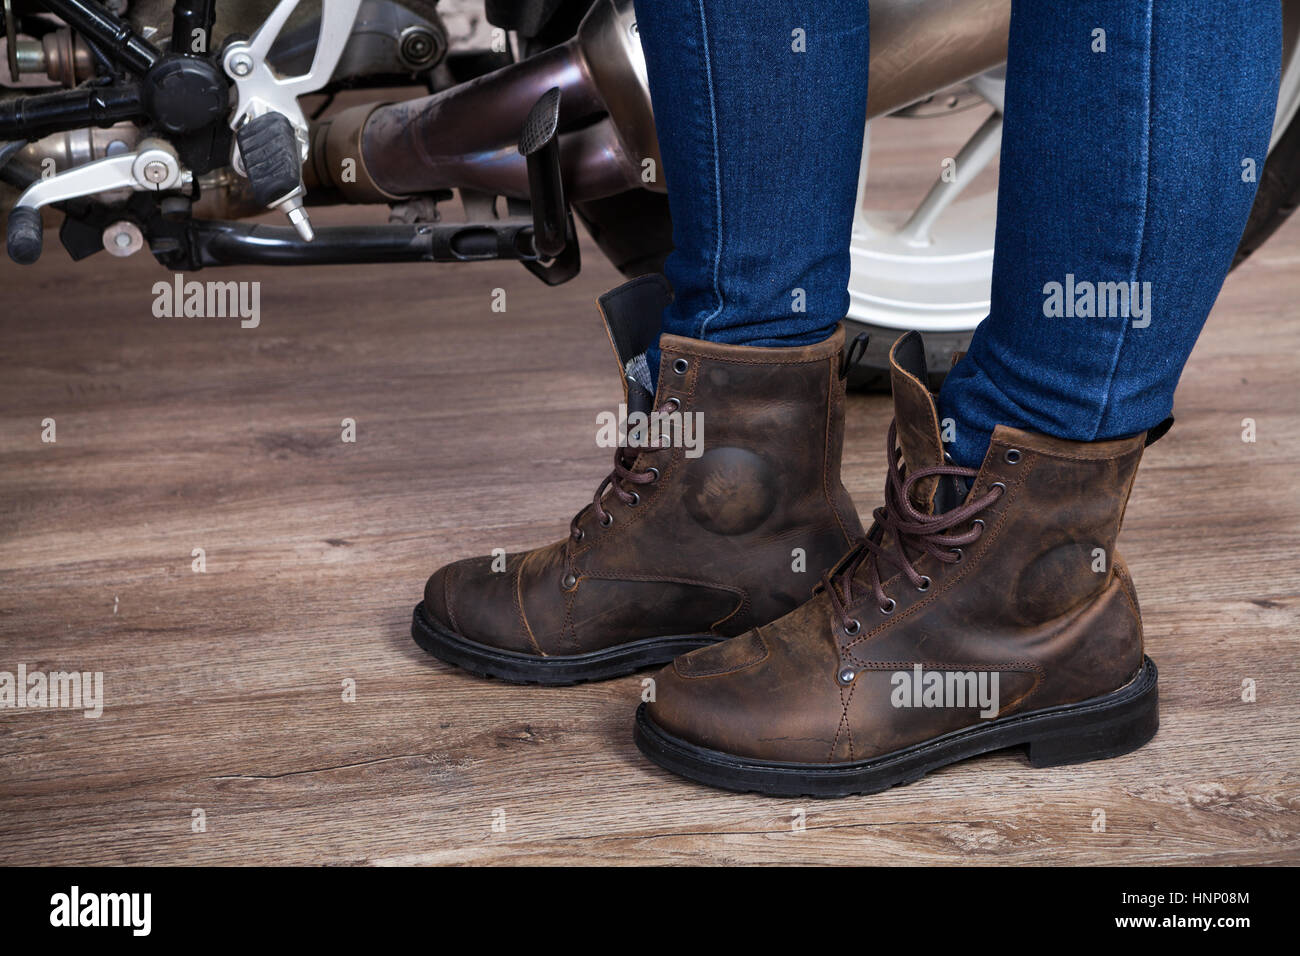 Demi-bottes en cuir brun pour la moto, les jambes dans le jeans est près de moto, vue en gros Banque D'Images